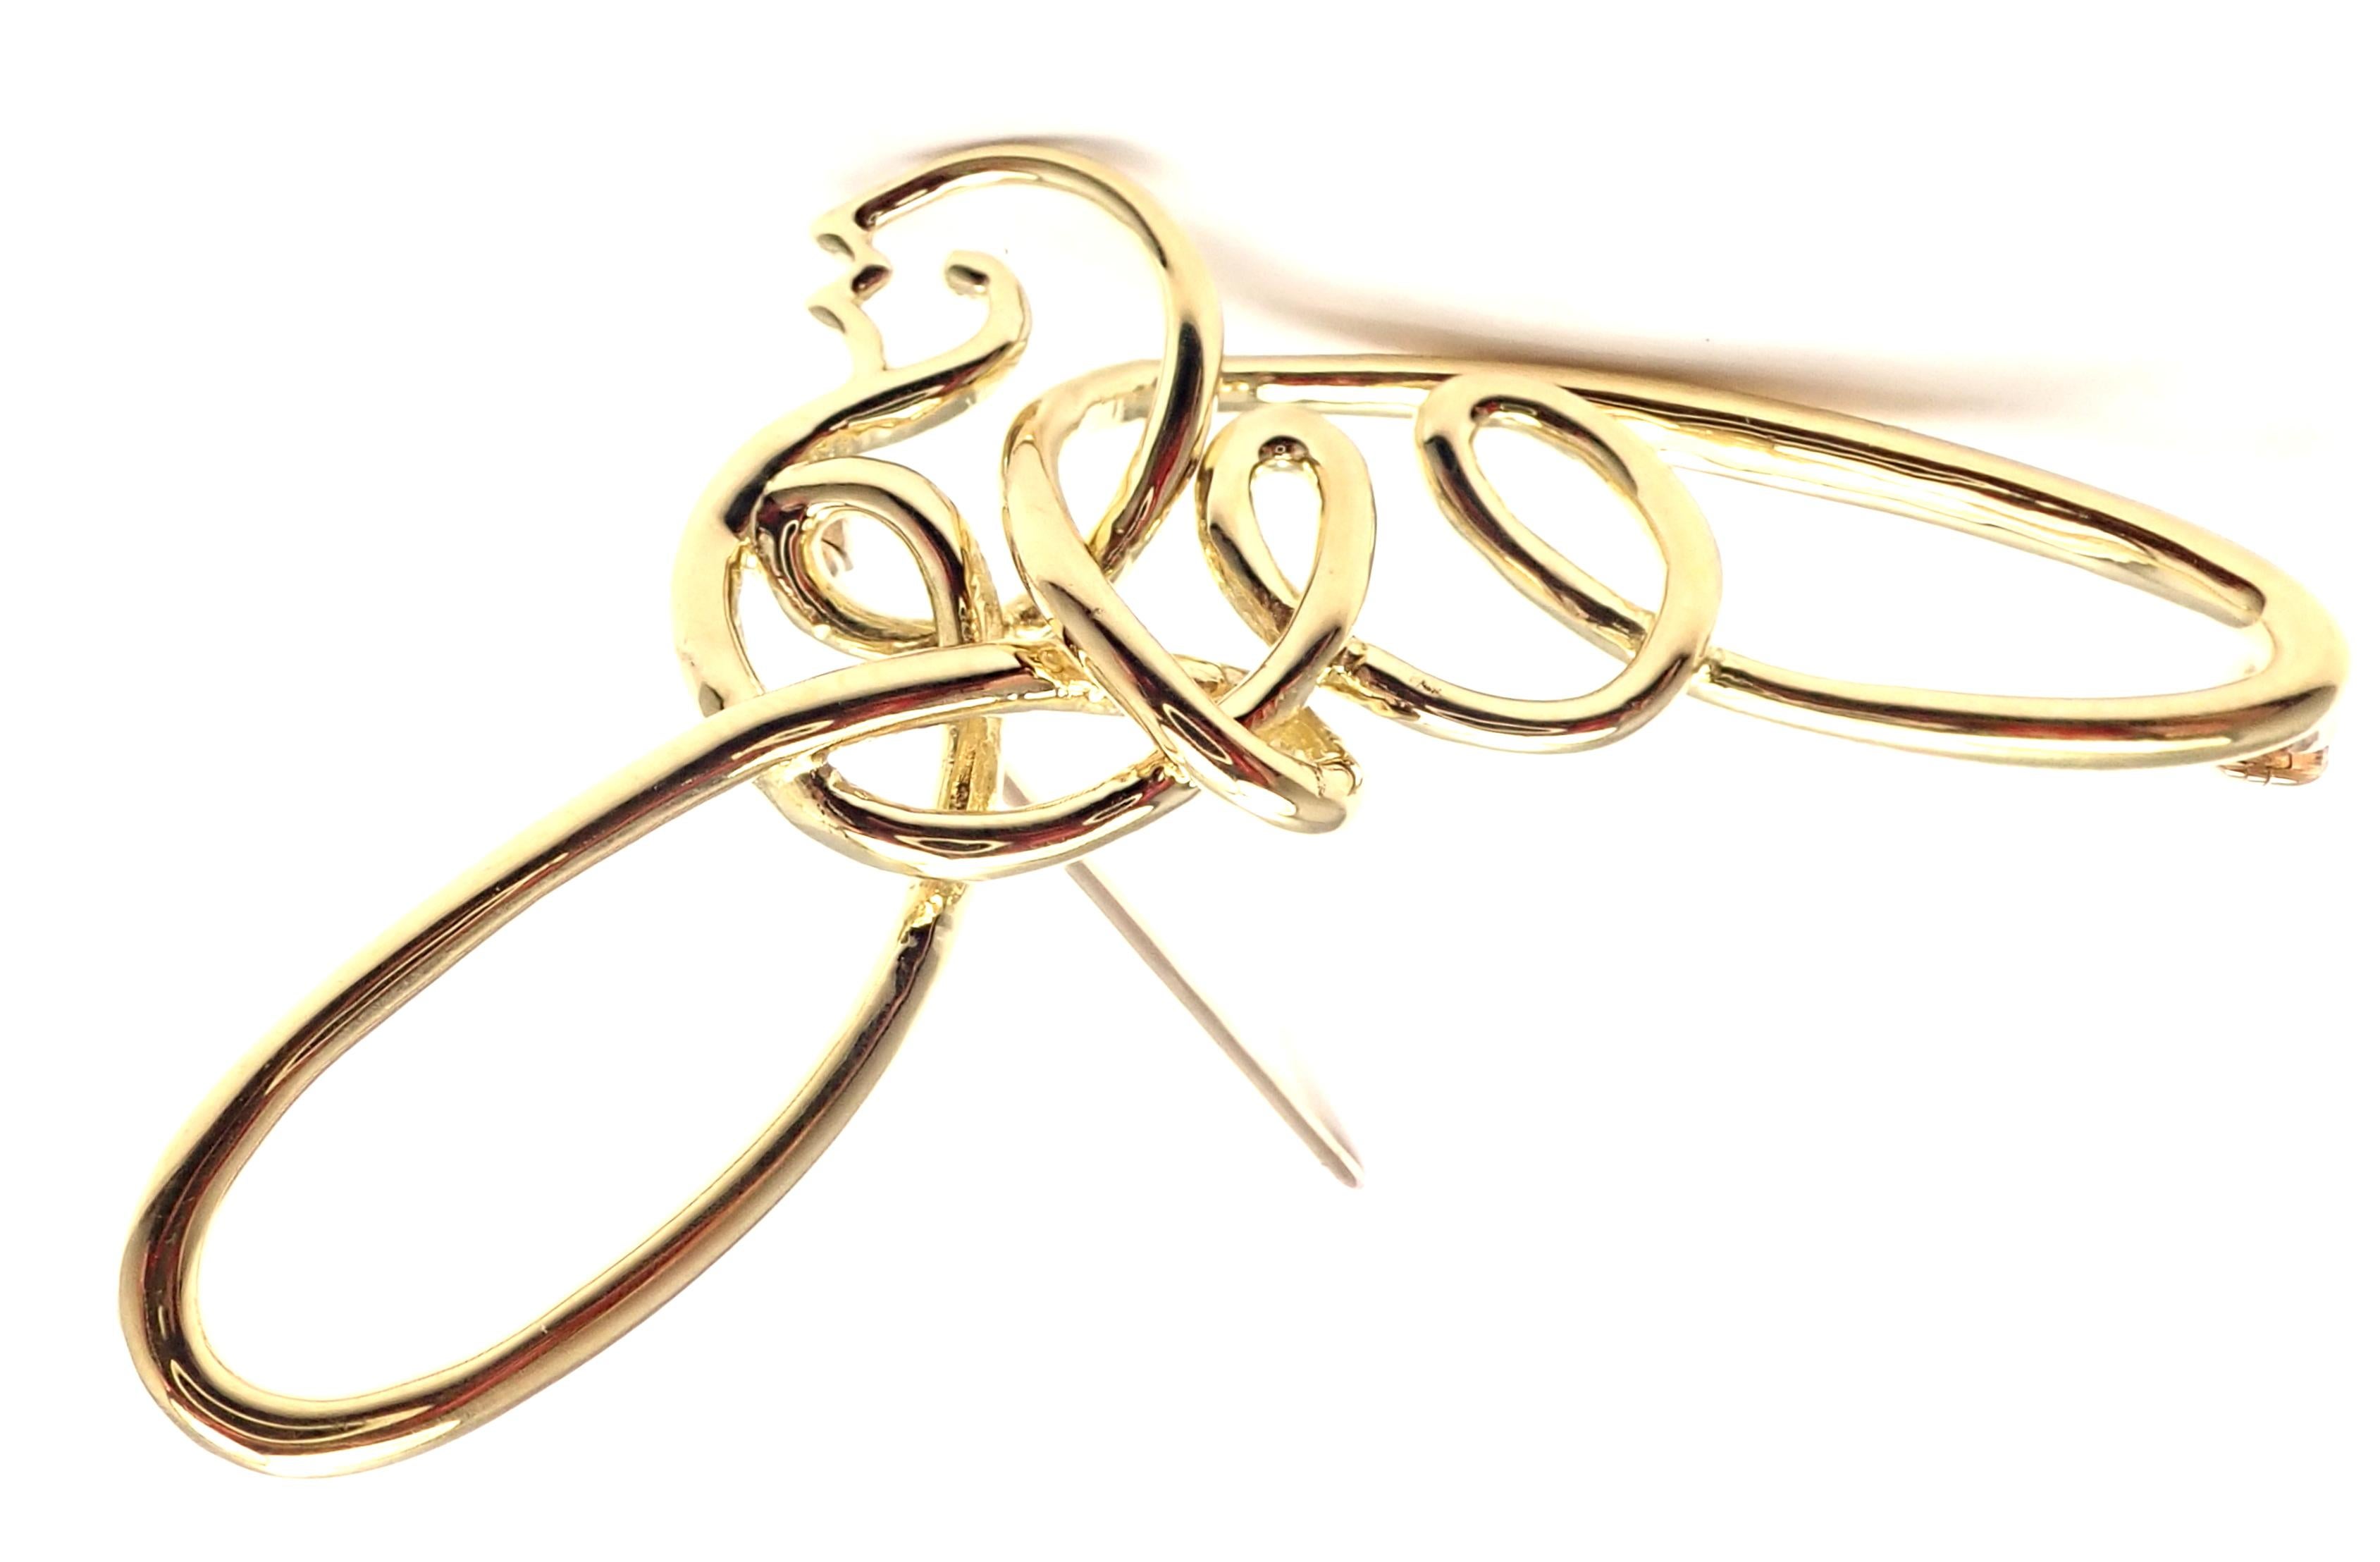 18k Gelbgold Taube Brosche Pin von Paloma Picasso für Tiffany & Co. 
Einzelheiten: 
Abmessungen: 2